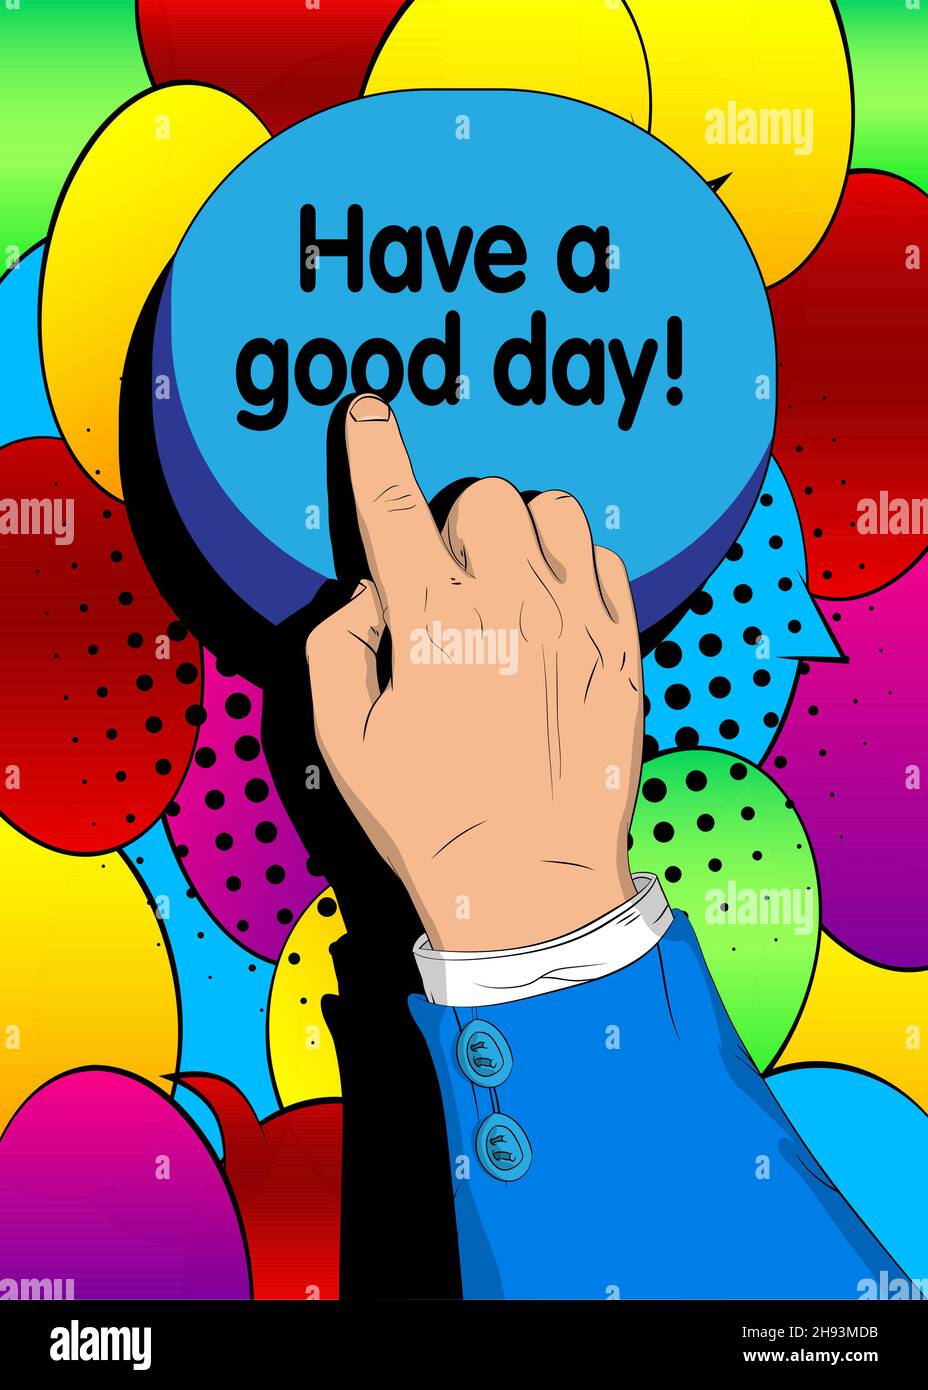 Geschäftsmann drängen Haben Sie einen guten Tag! Mit seinem Zeigefinger. Konzept im Comic-Stil. Stock Vektor